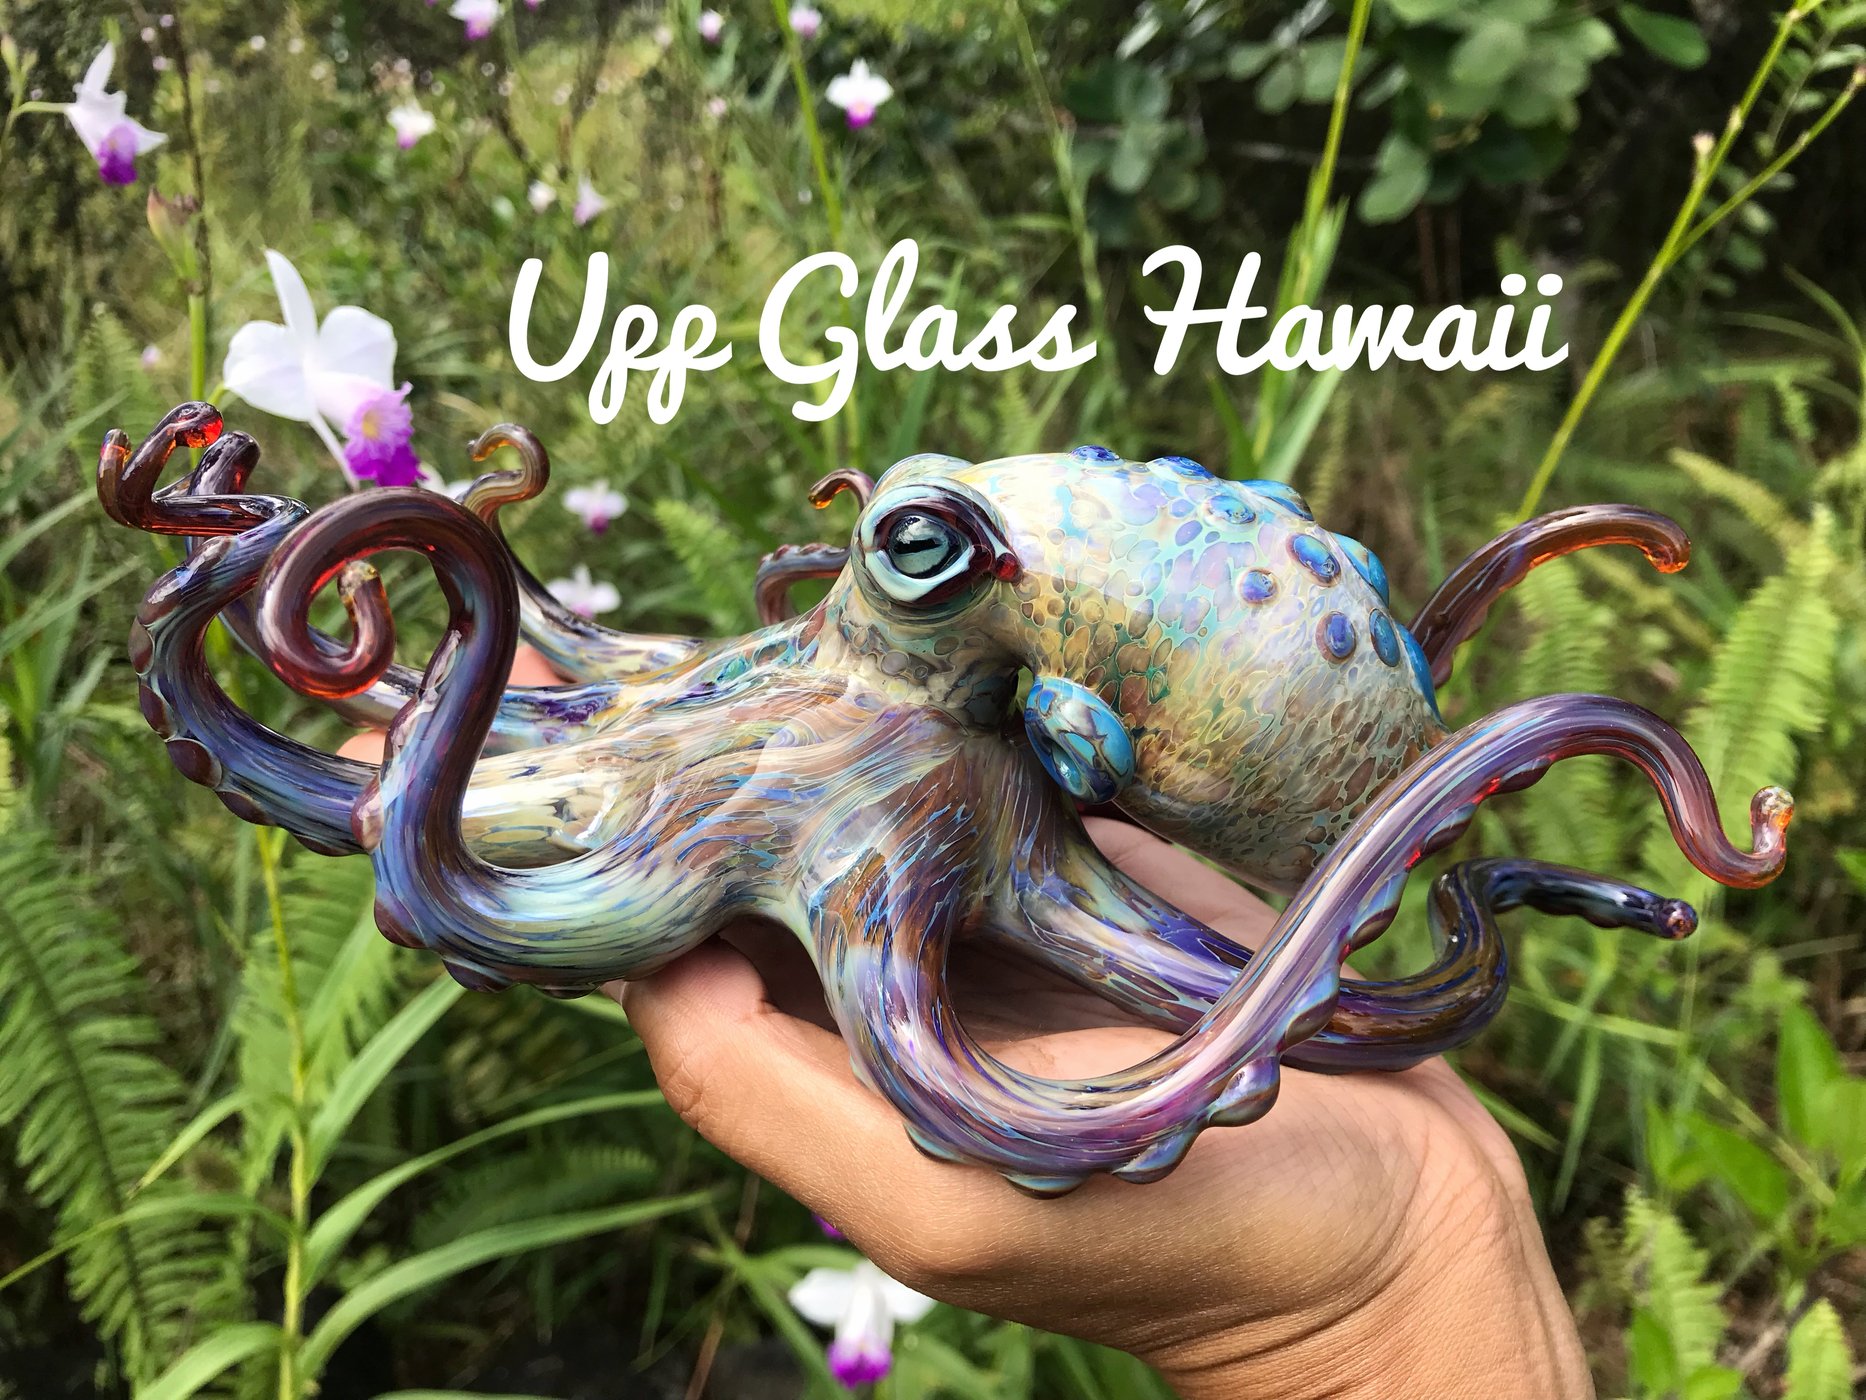 Welcome to Upp Glass Hawaii